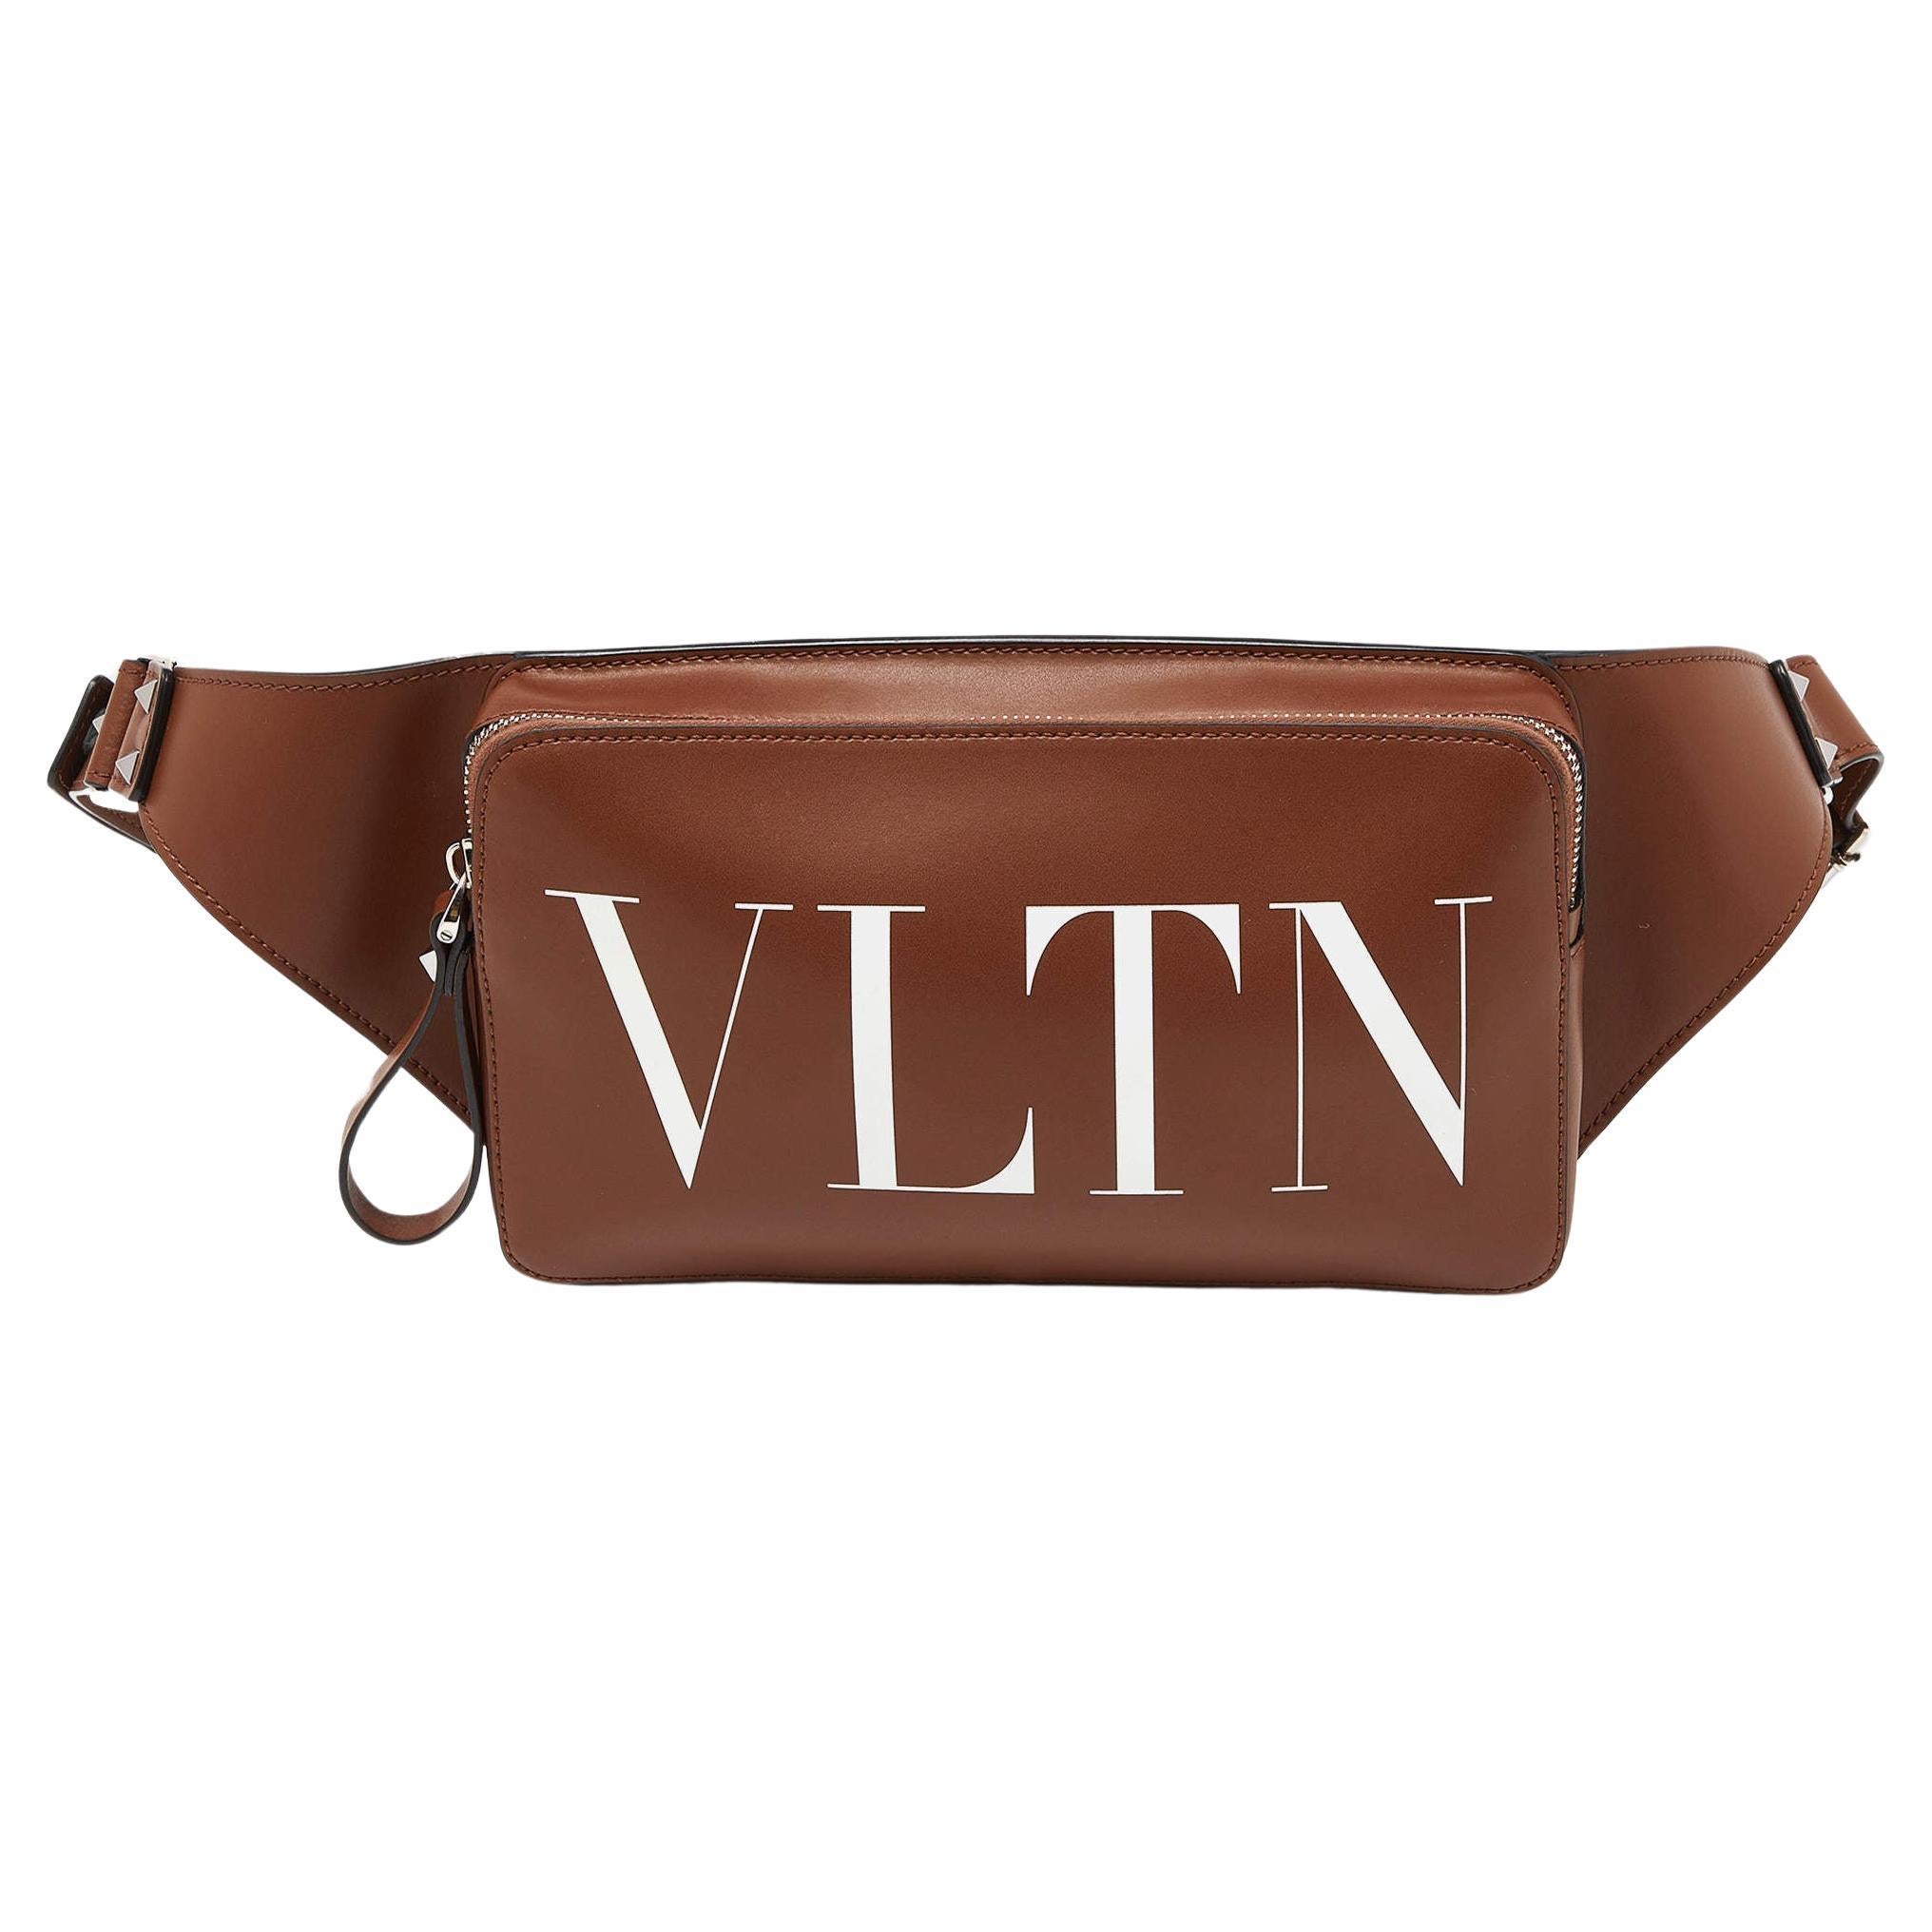 Valentino Brown Leather VLTN Belt Bag For Sale